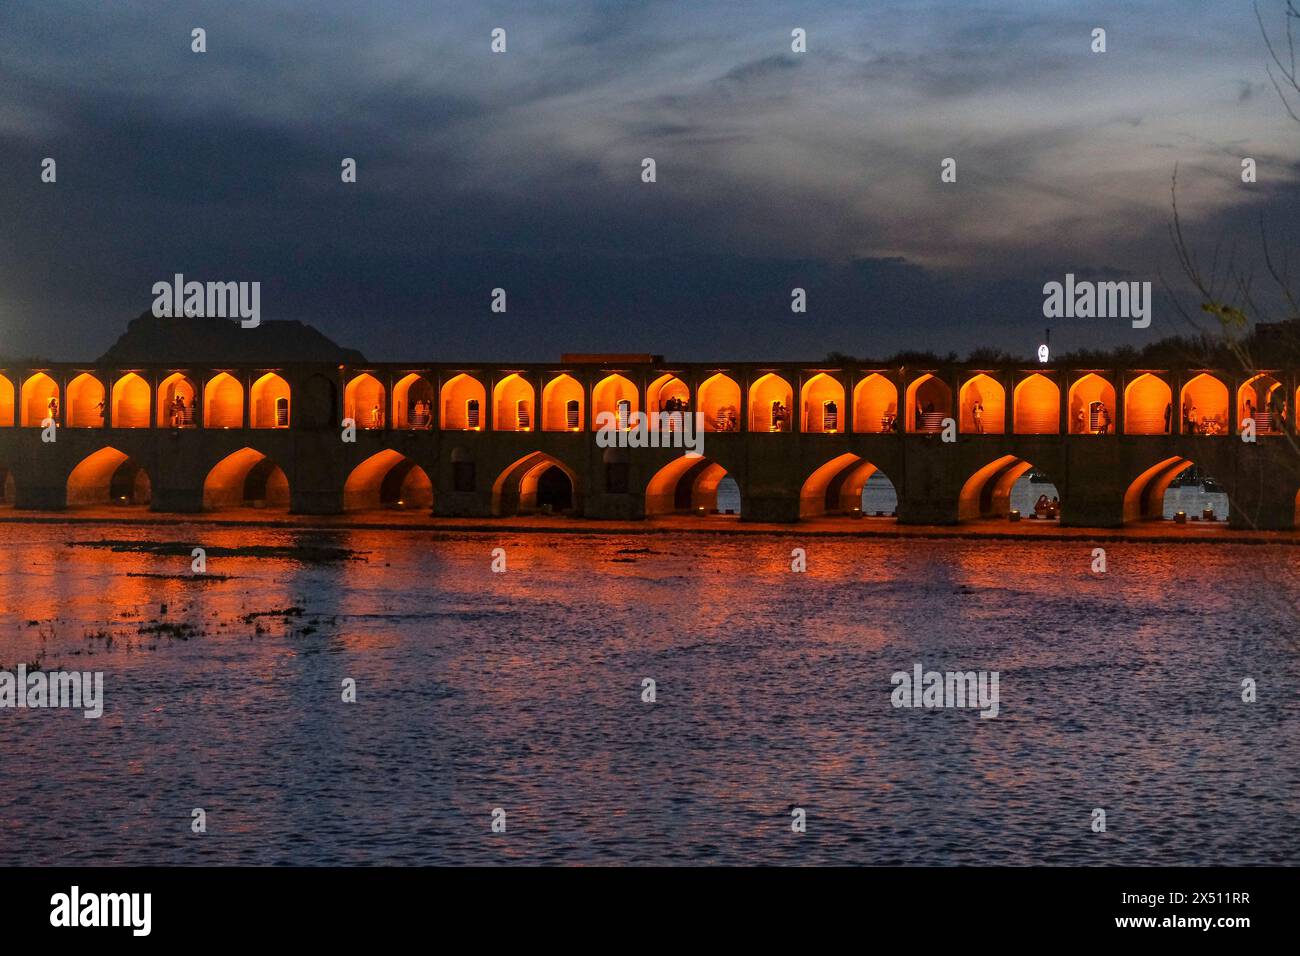 Ispahan, Iran - 31 mars 2024 : le pont Allahverdi Khan, populairement connu sous le nom de si-o-se-pol, est le plus grand des onze ponts historiques d'Ispahan Banque D'Images